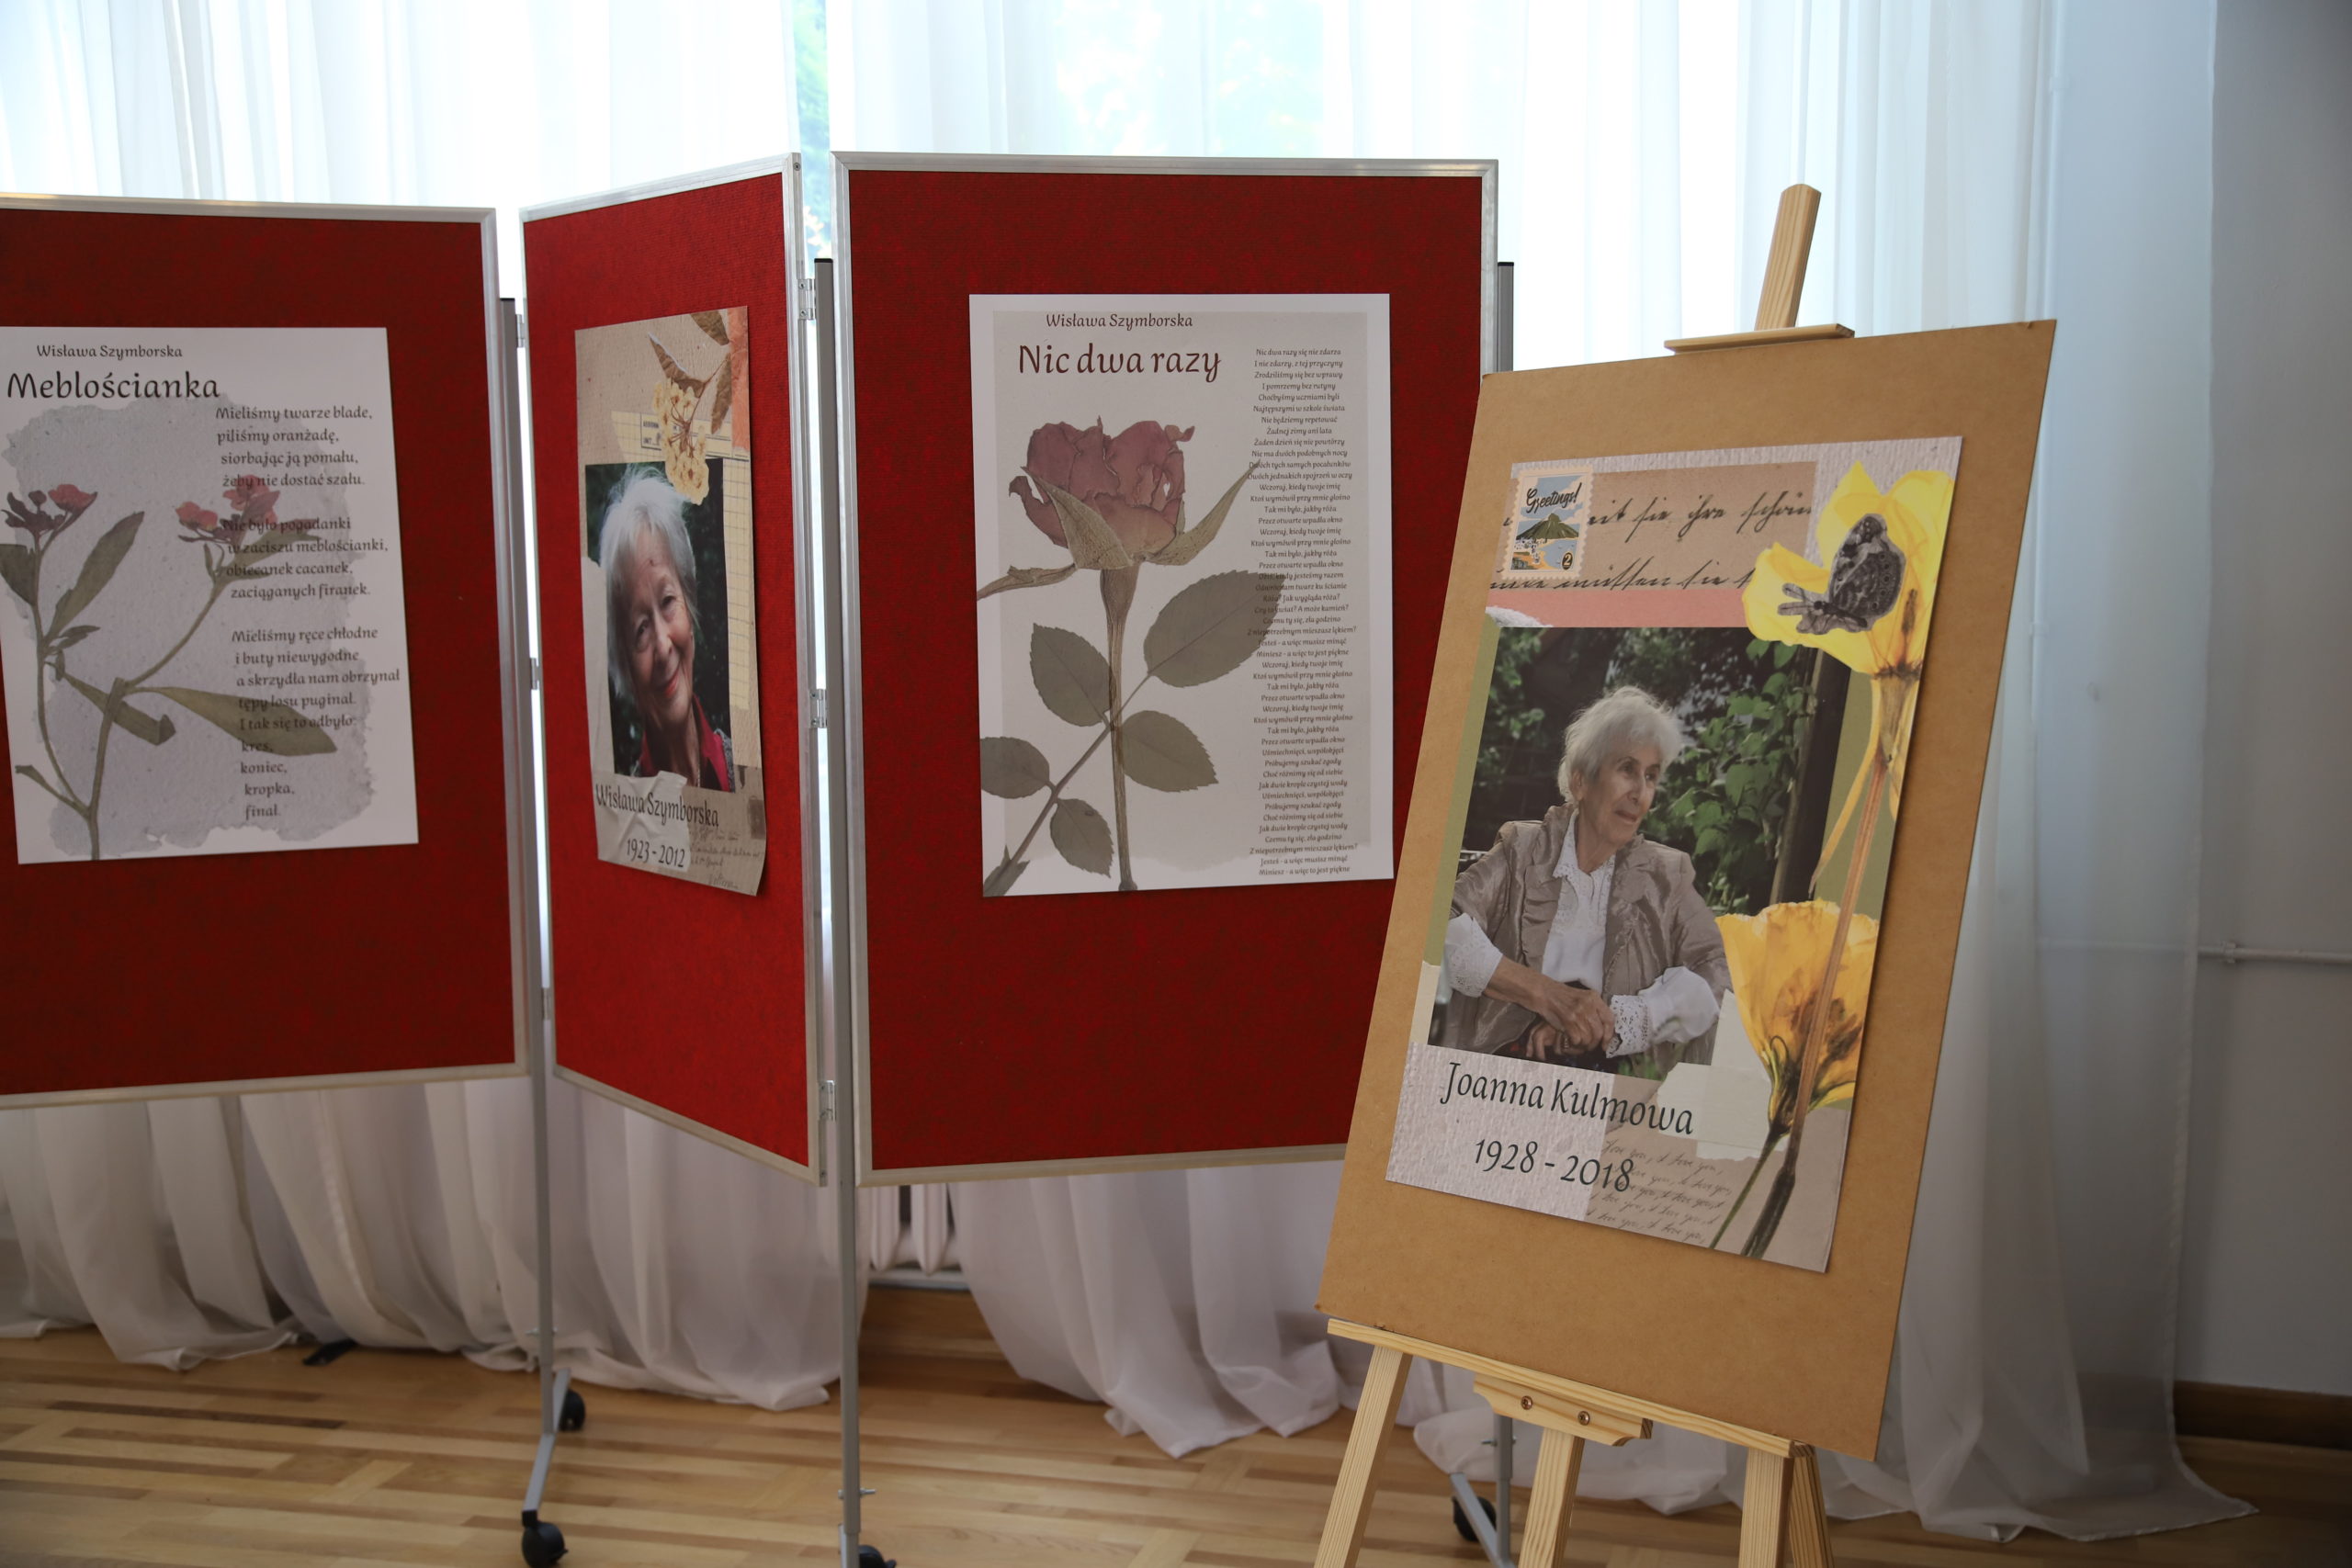 grafika przedstawiająca cztery plansze. Jedna przedstawia wizerunek Joanny Kulmowej, druga Wisławy Szymborskiej. Dwie pozostałe przedstawiają wiersze Wisławy Szymborskiej pt. "Nic dwa razy" i "Meblościanka"